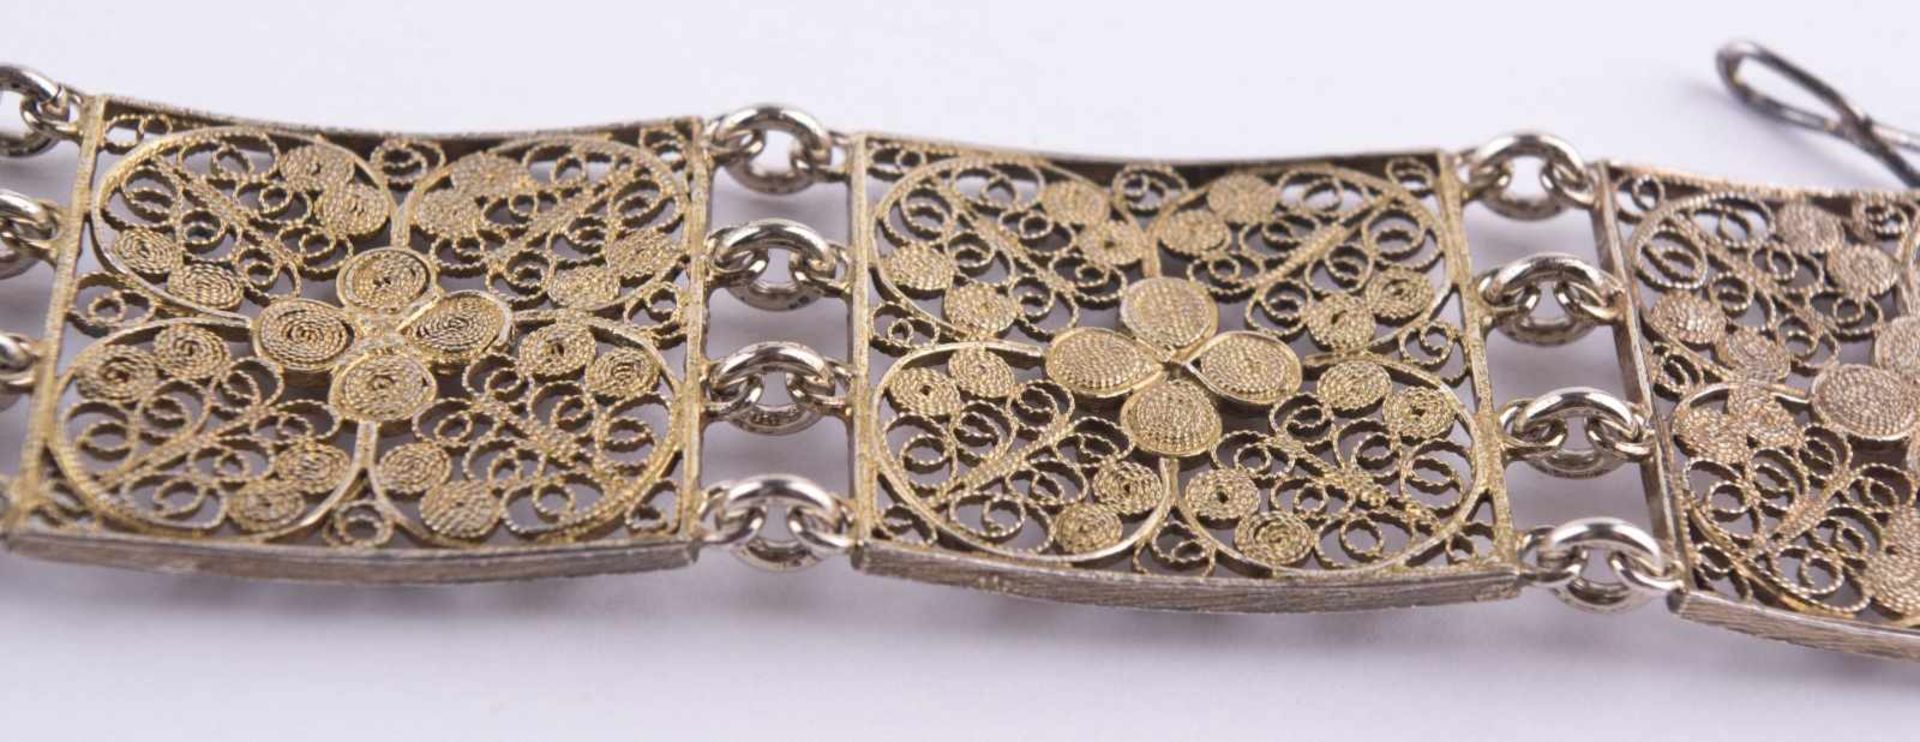 Jugendstil Armband um 1910 / Art Nouveau silver bracelet, about 1910 Silber 800/000, filigrane - Image 5 of 6